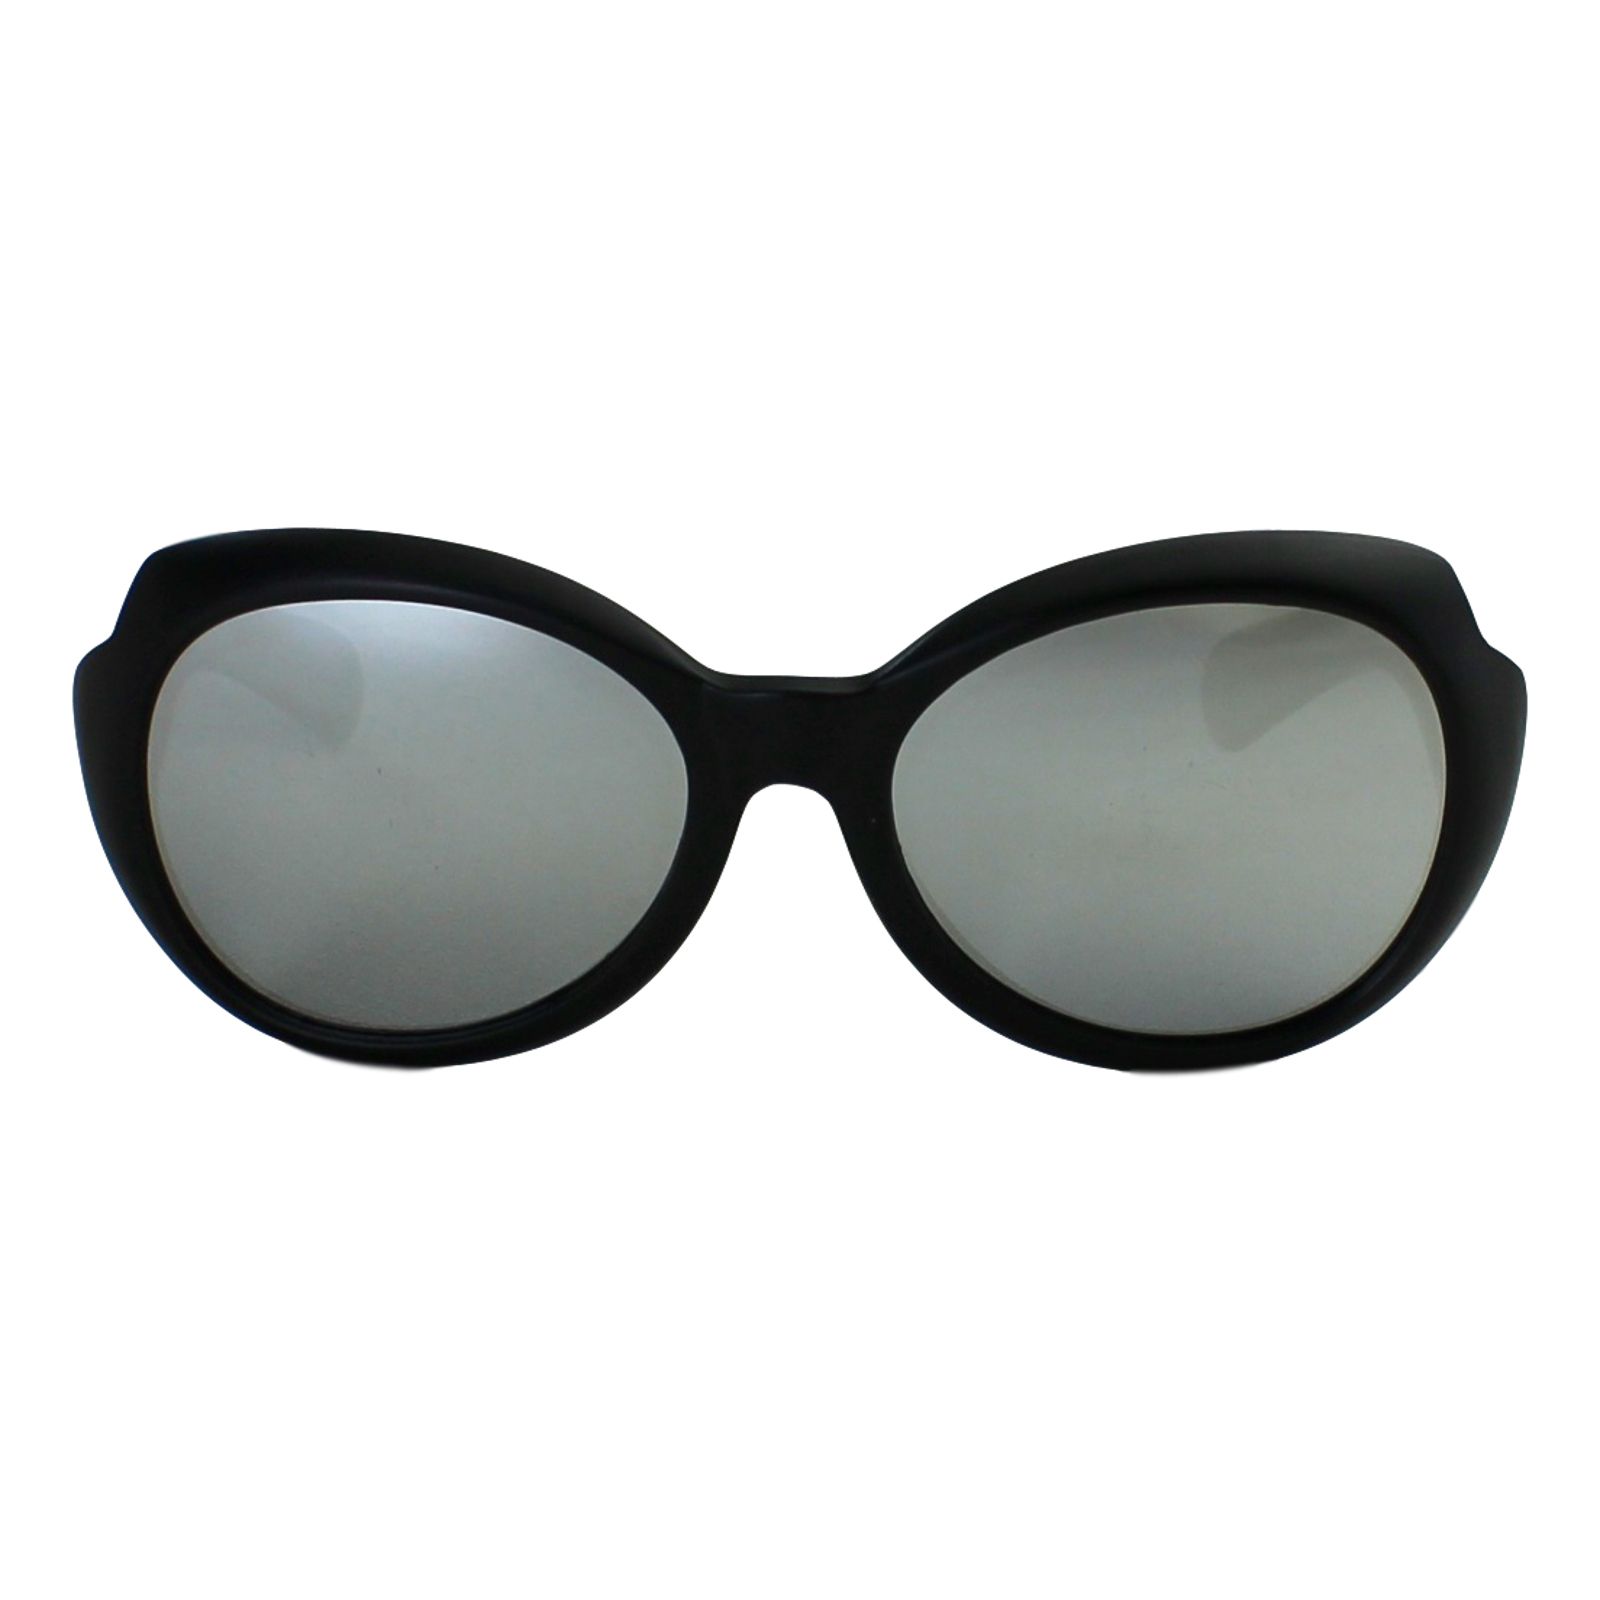  Óculos de Sol Díspar ID1963 Infantil - 6 a 9 anos - Preto